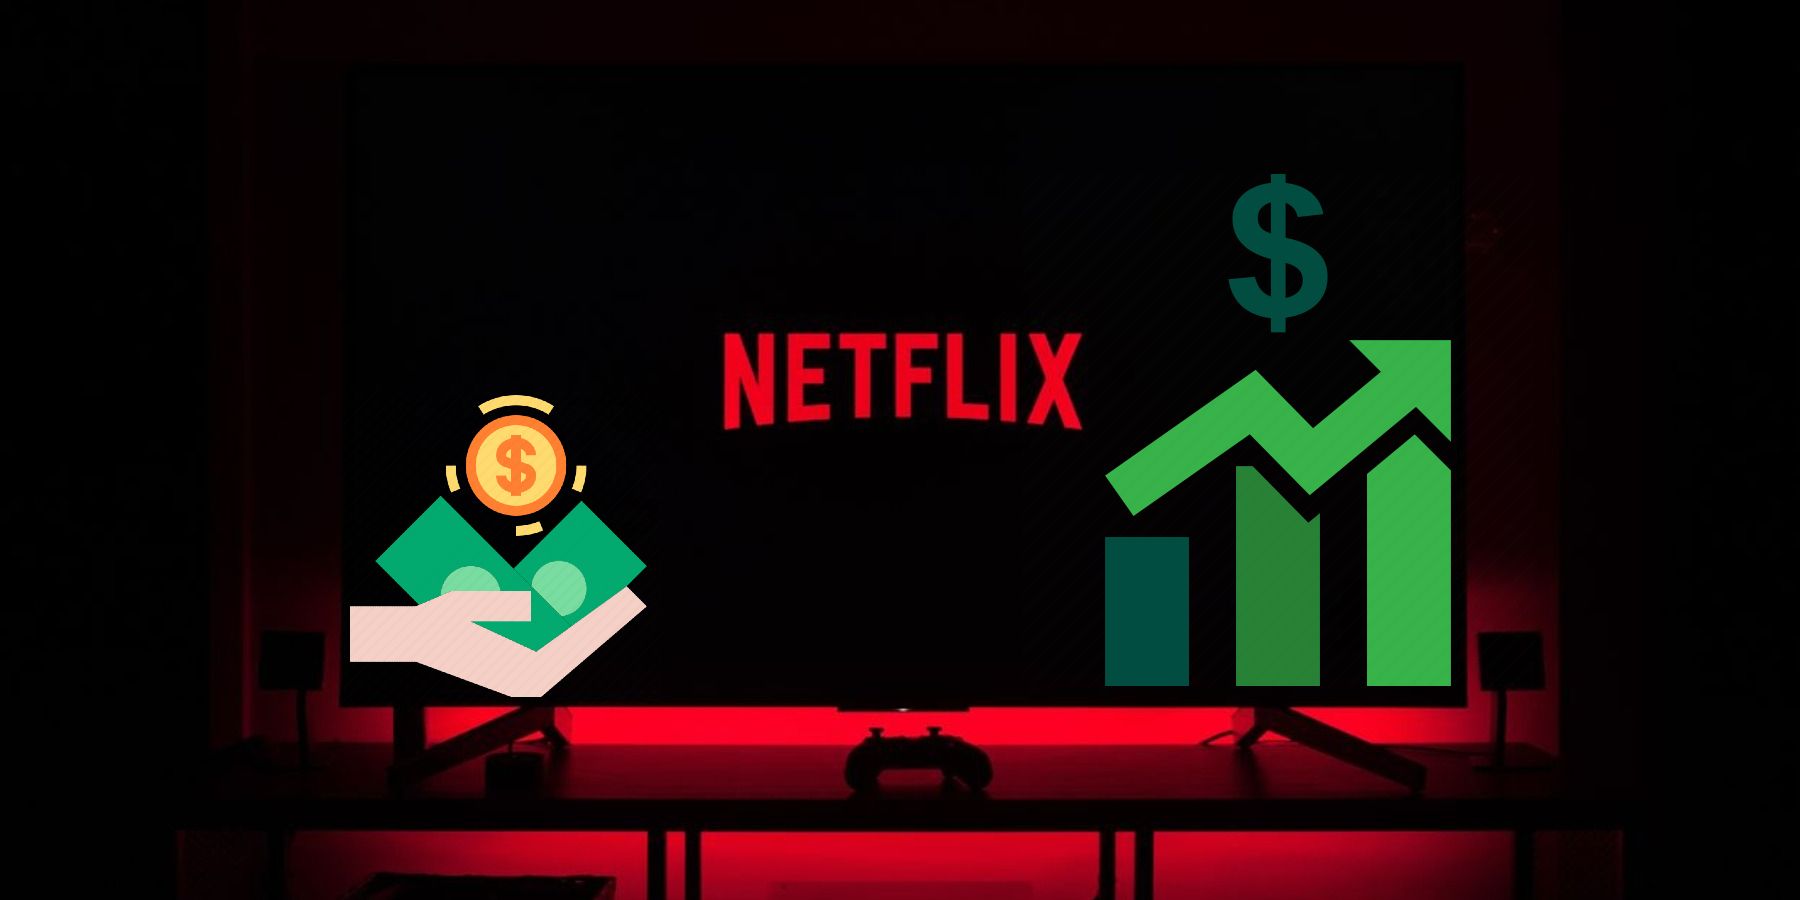 Netflix TV set price increase